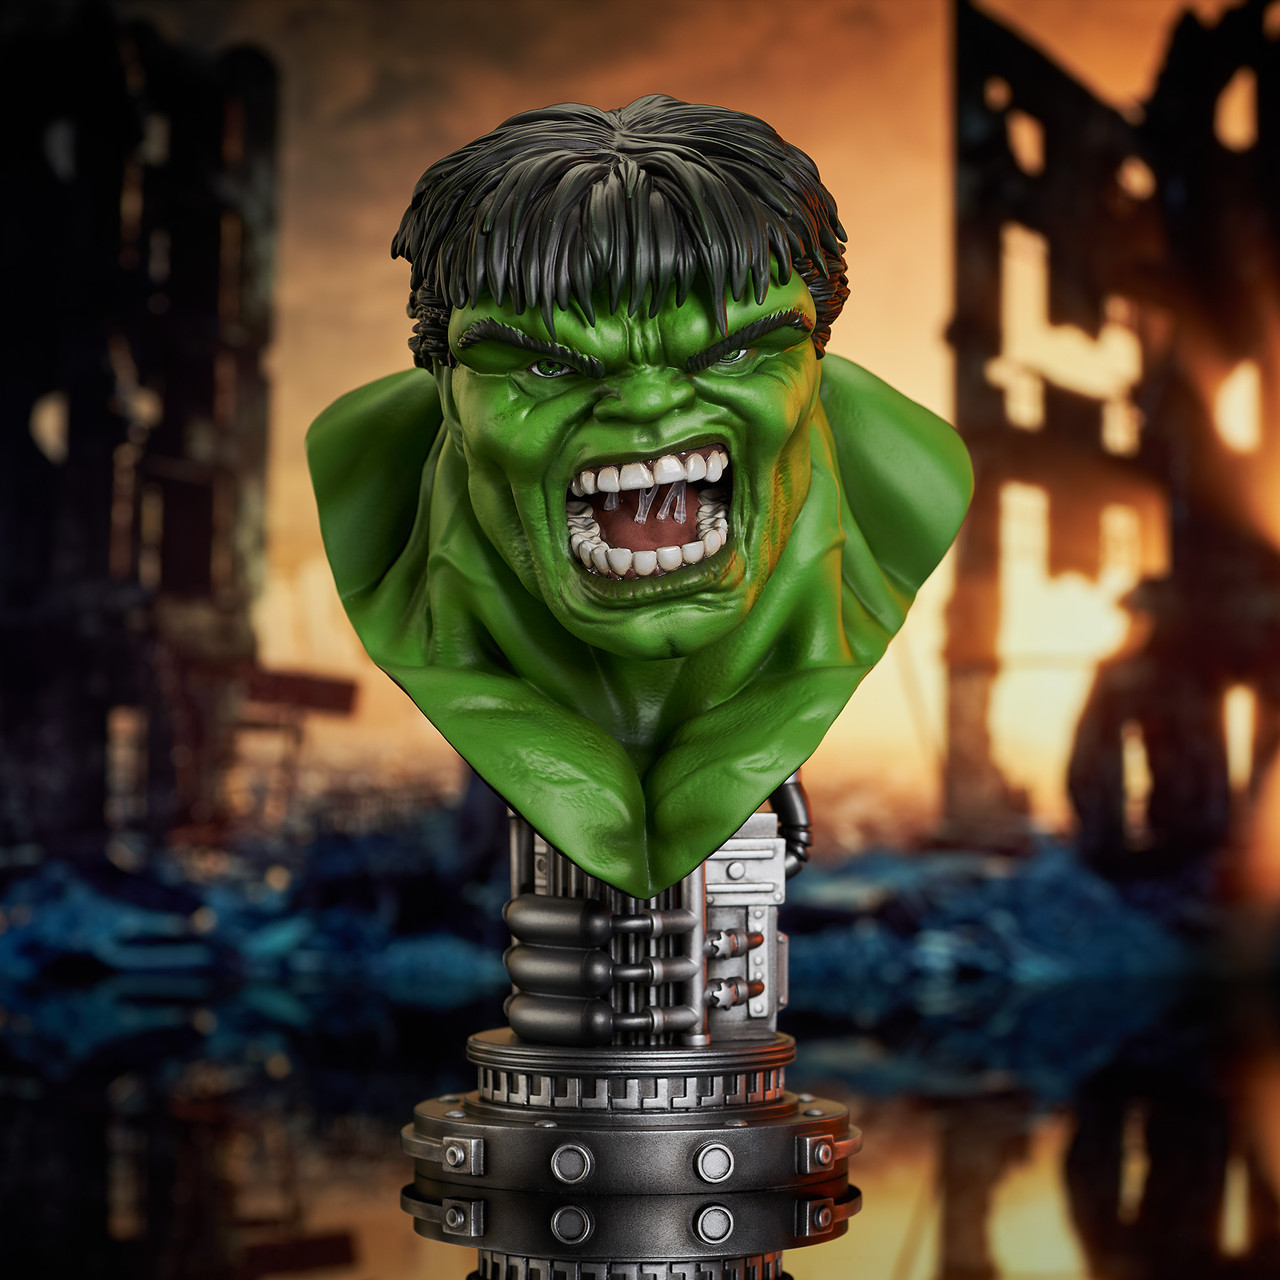 Pre-Order Gentle Giant Marvel Hulk Legends in 3D Bust